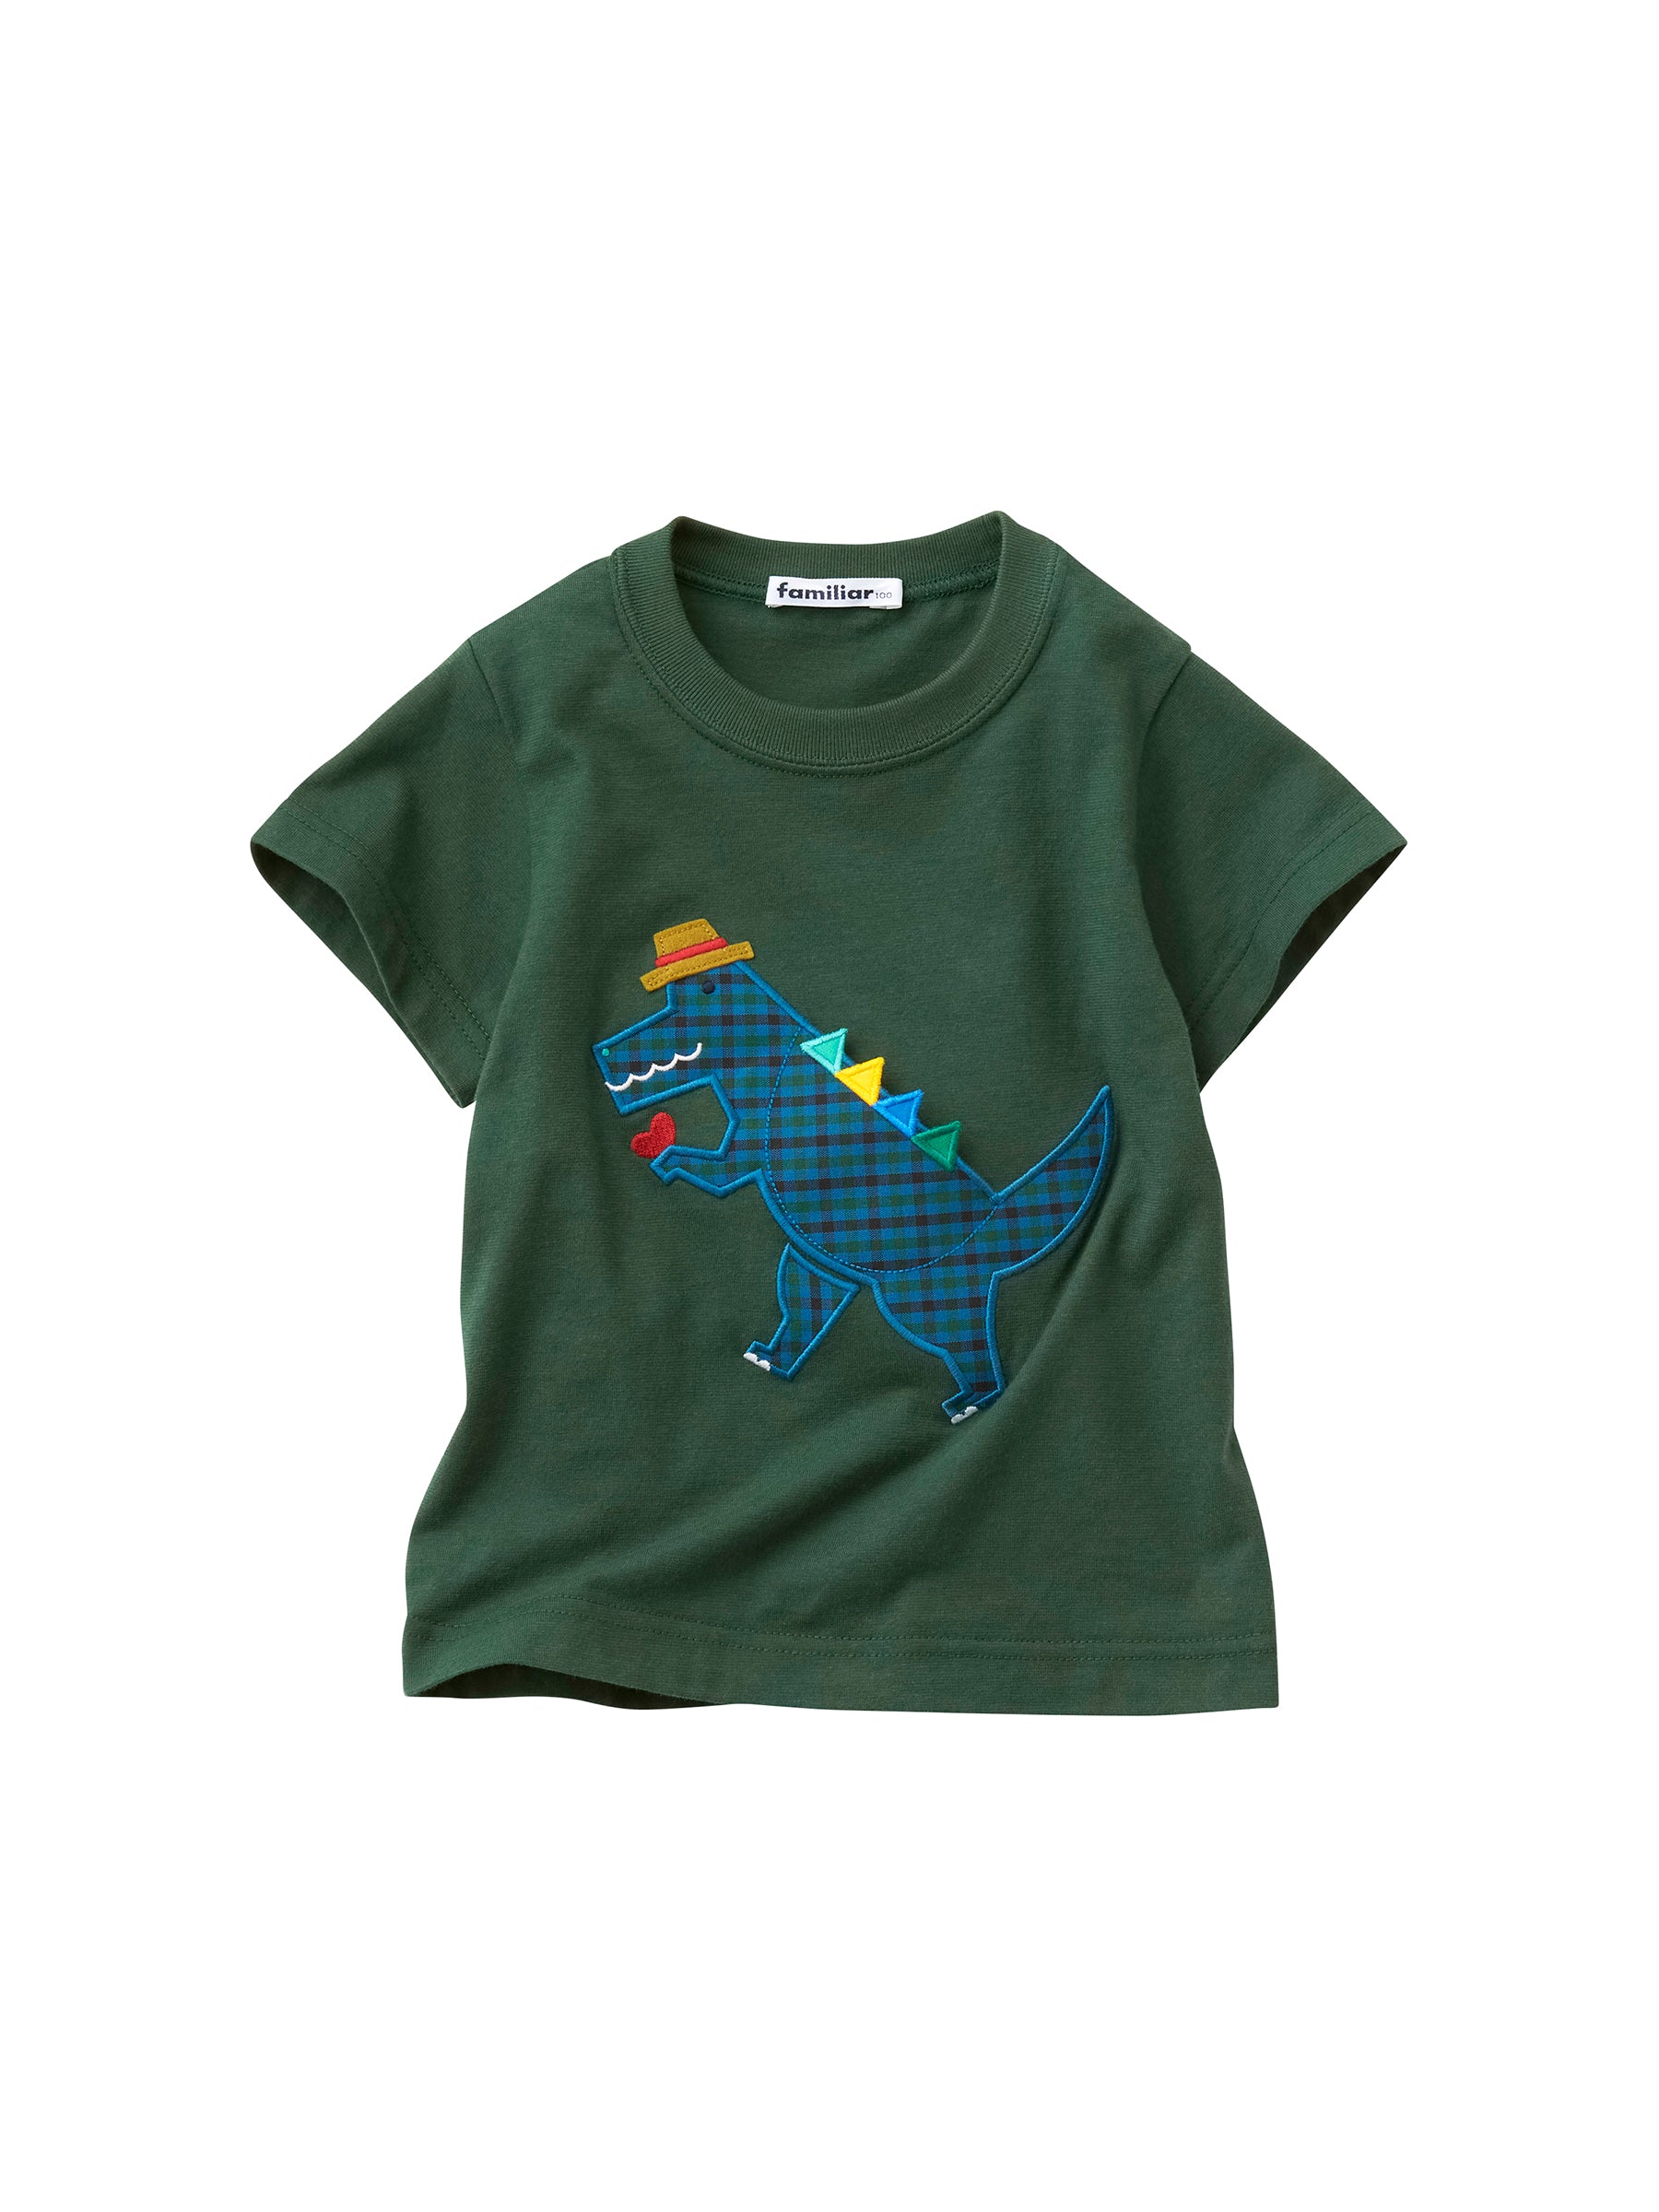 キッズ/ベビー/マタニティファミリア恐竜Tシャツ